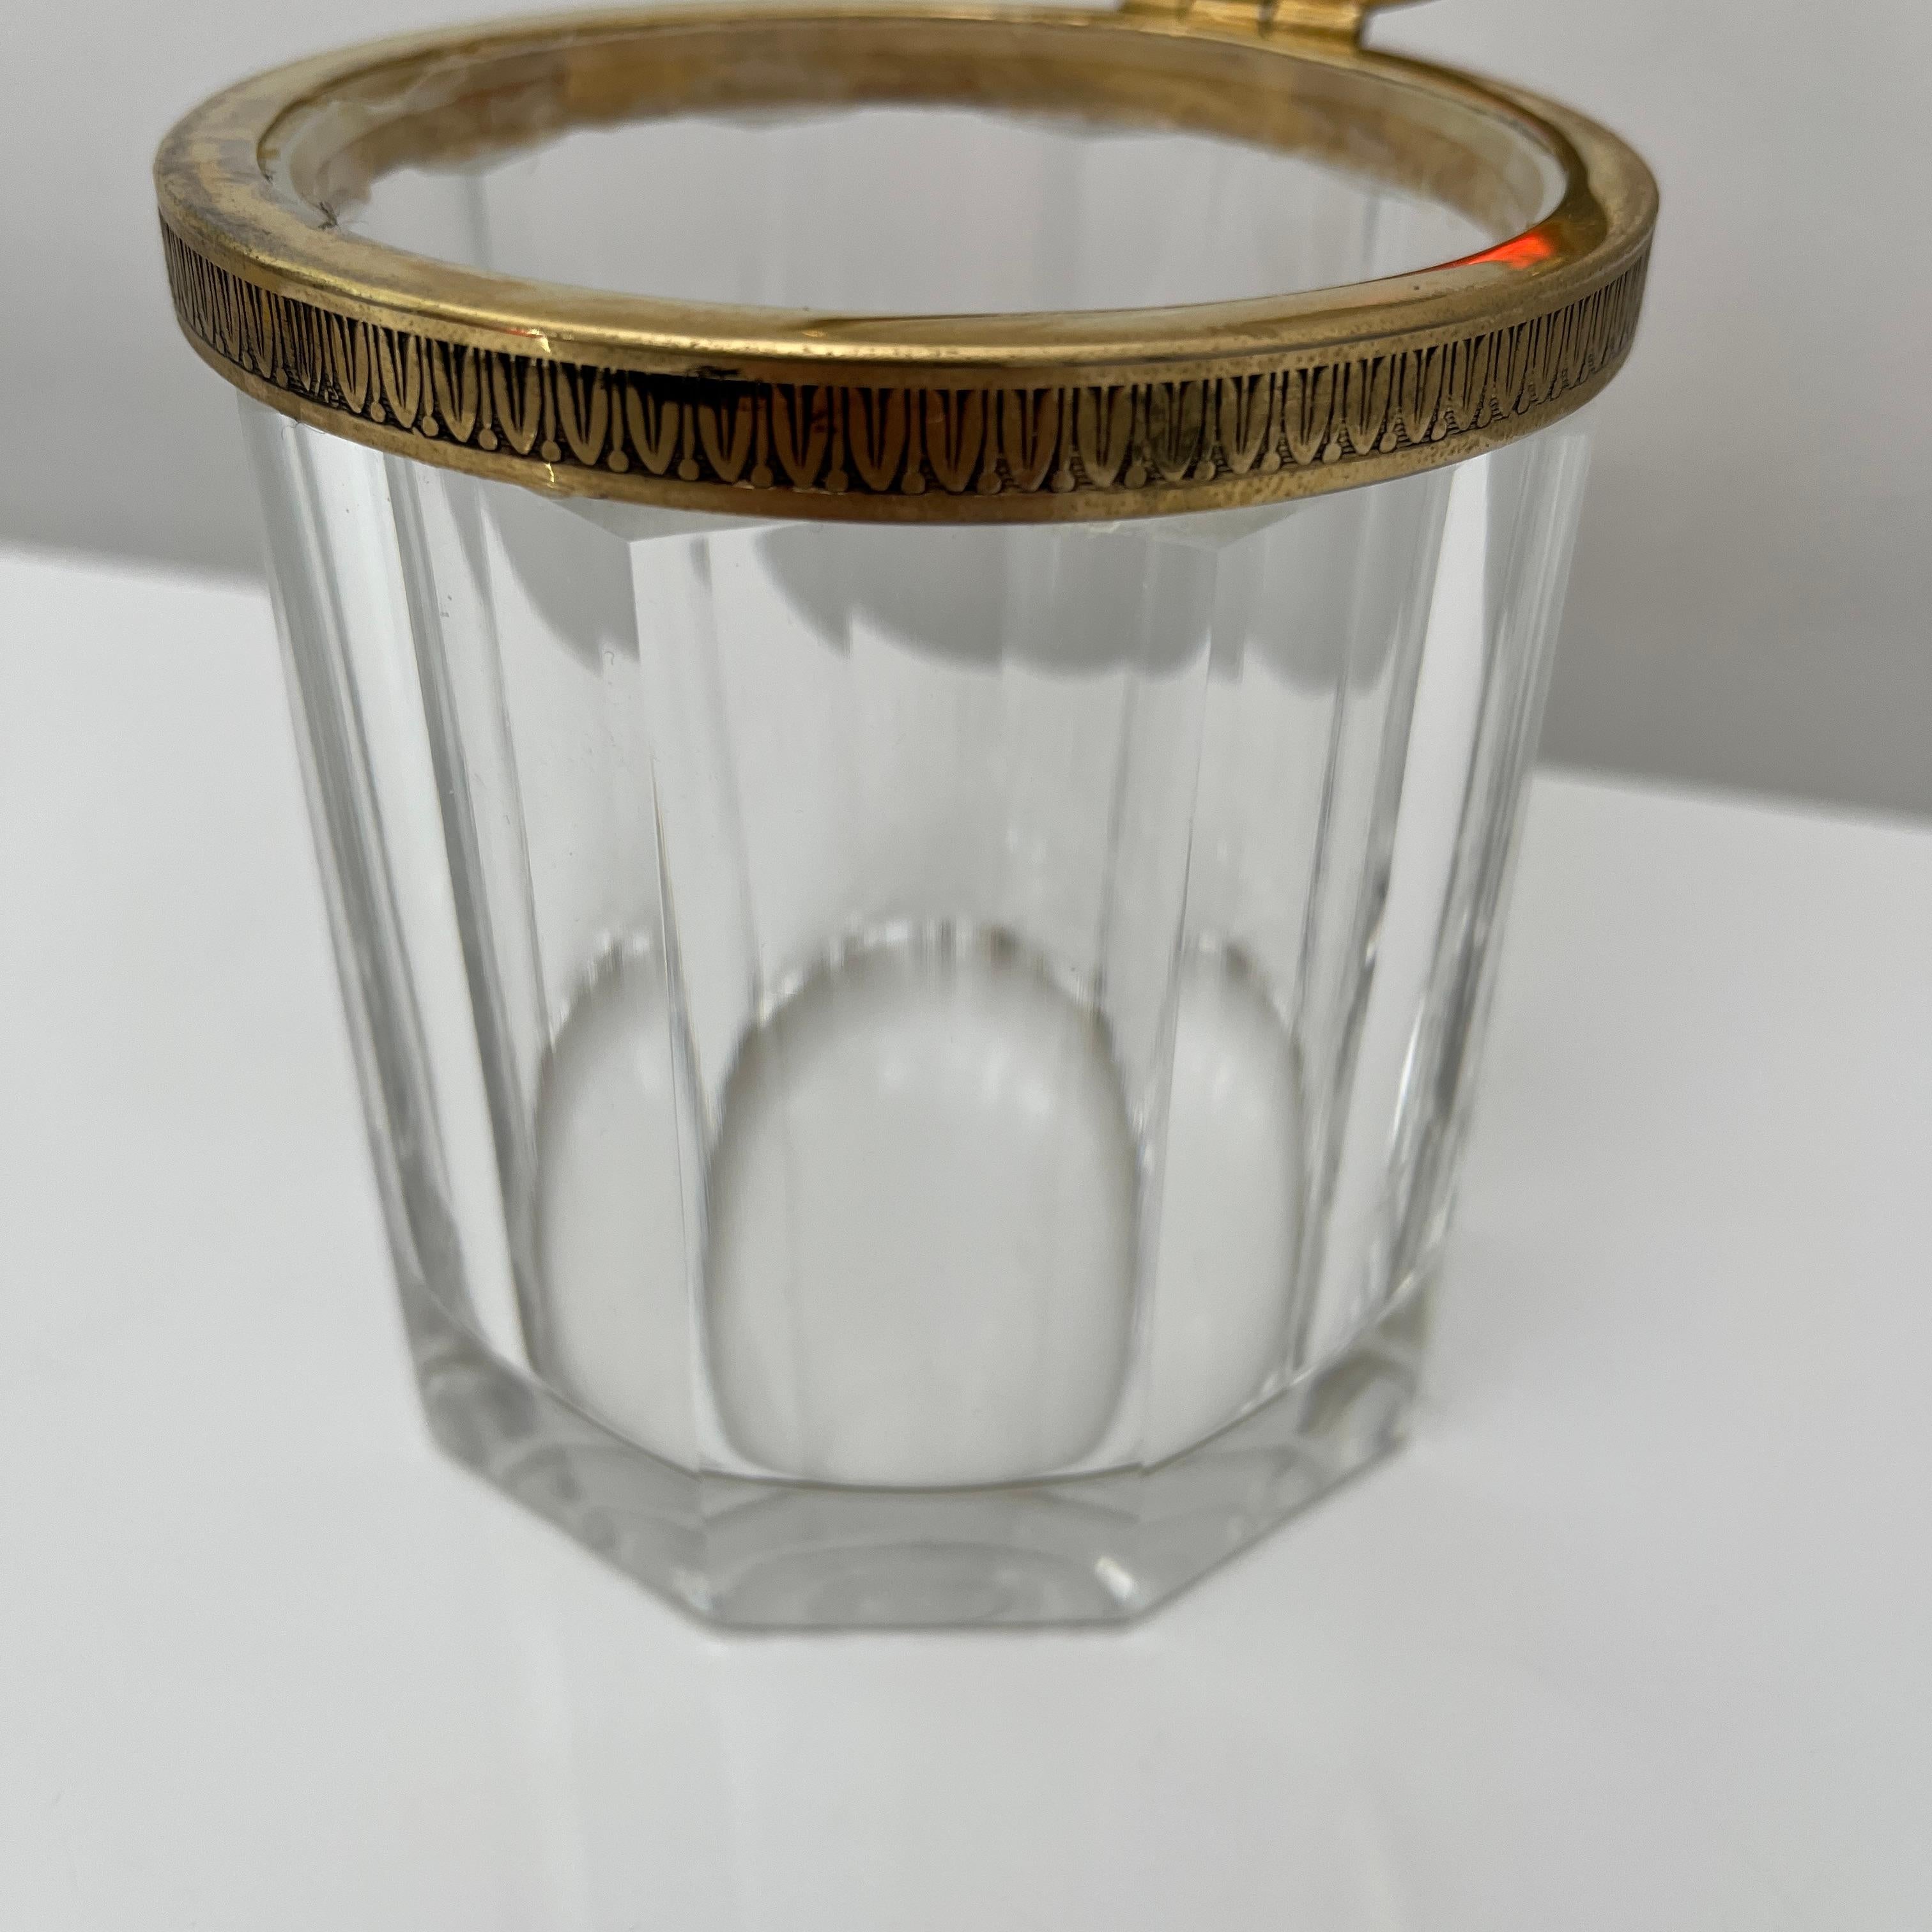 Mid-20th Century Boite en cristal doré taillé faceté CF Benito Michel, France vers 1960 For Sale